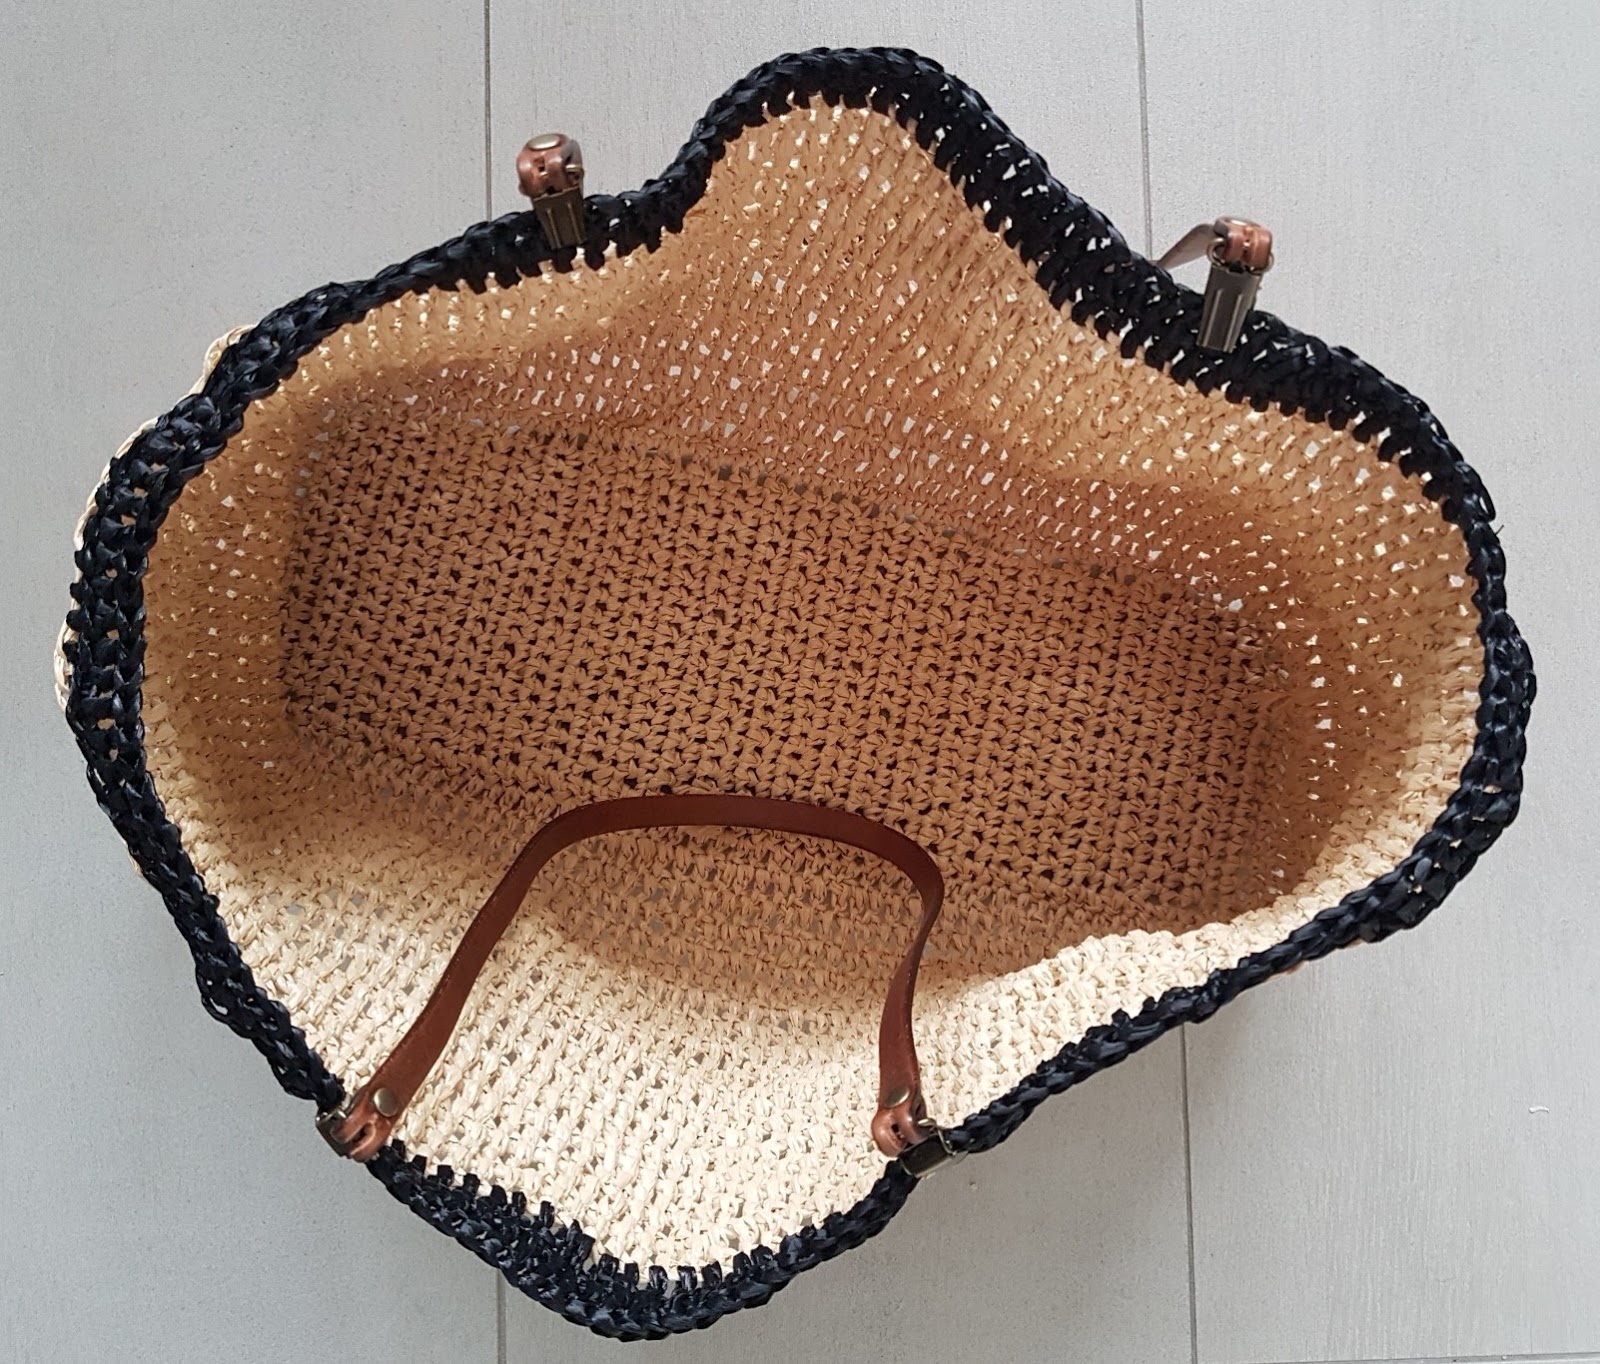 JUBILOCIOS: BOLSO DE RAFIA (a crochet)